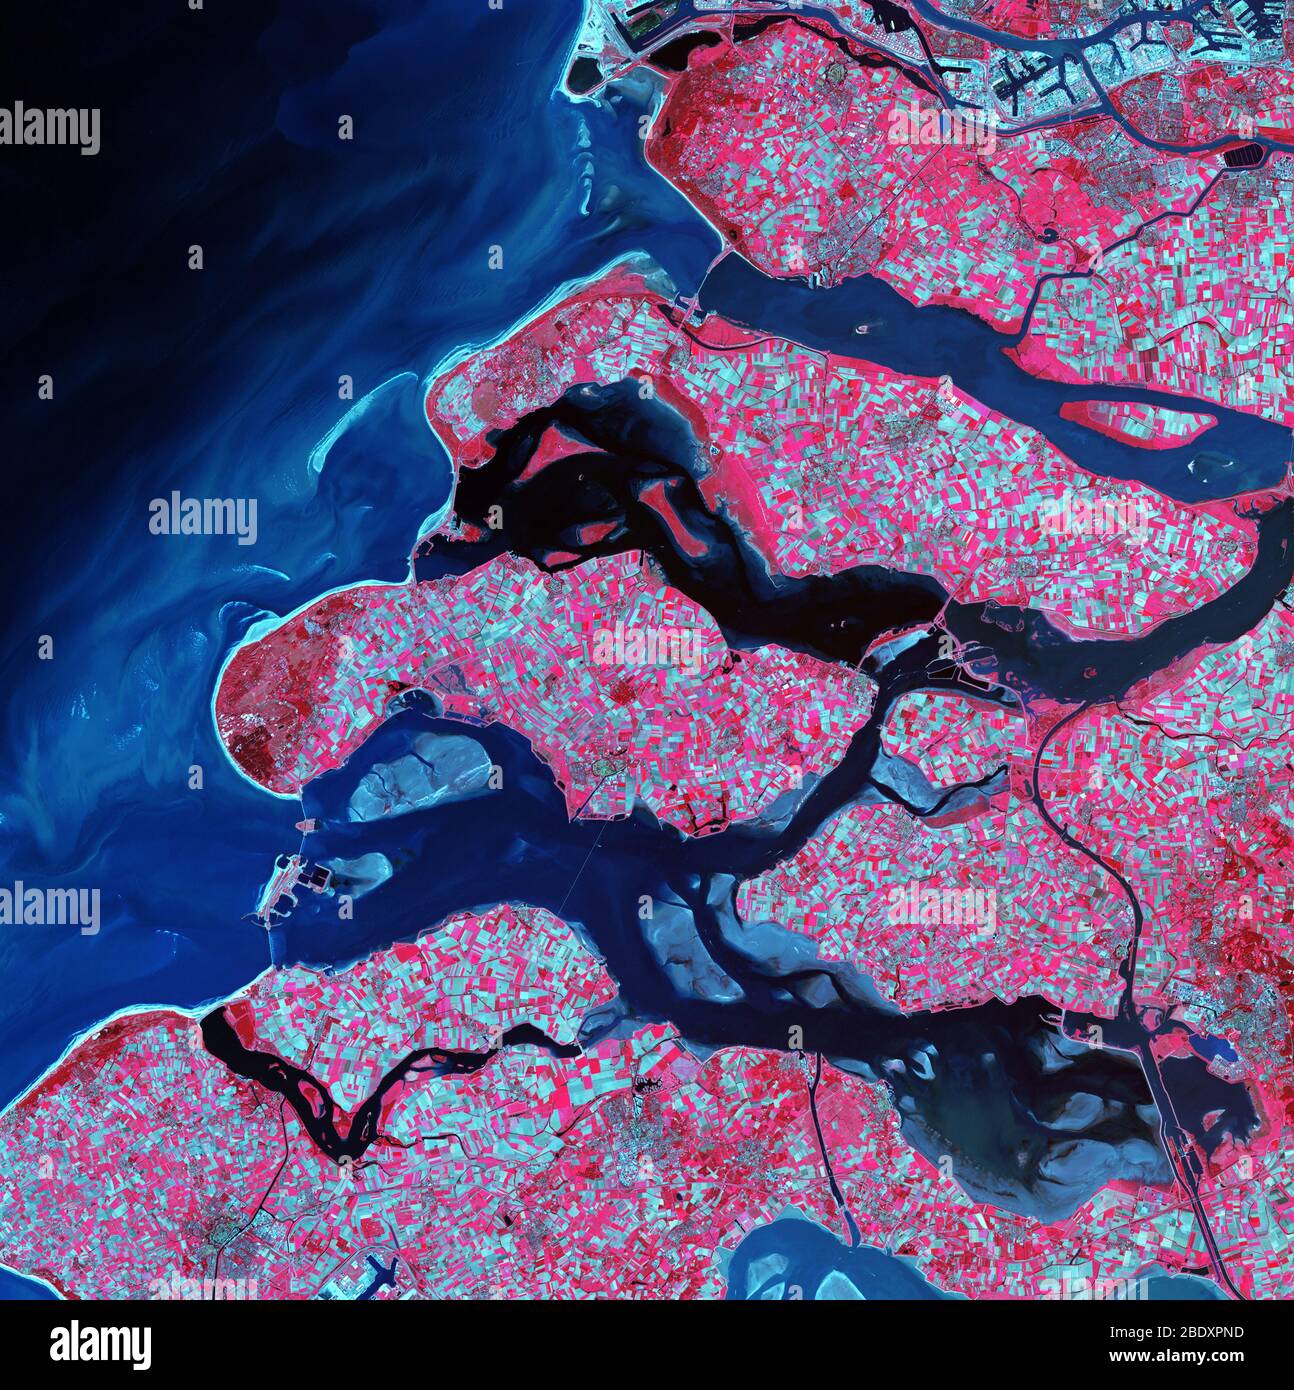 Delta del Rin-Mosa, imagen de satélite. El norte está en la parte superior. La vegetación es roja, las áreas estériles son de color azul claro y el agua es de color azul oscuro. Este delta ha sido formado por sedimentos de los ríos Mosa y Rin, ya que fluyen hacia el Mar del Norte en la costa de los países Bajos. La mayor parte de la tierra aquí está cubierta de campos, con campos estériles en azul y cultivos en rojo. Se observan barreras a través de las salidas del delta, que frenan las mareas y protegen esta zona baja. La zona azul claro en la parte superior derecha forma parte del puerto de Rotterdam. El área mostrada en esta imagen es de unos 60 kilómetros de wi Foto de stock